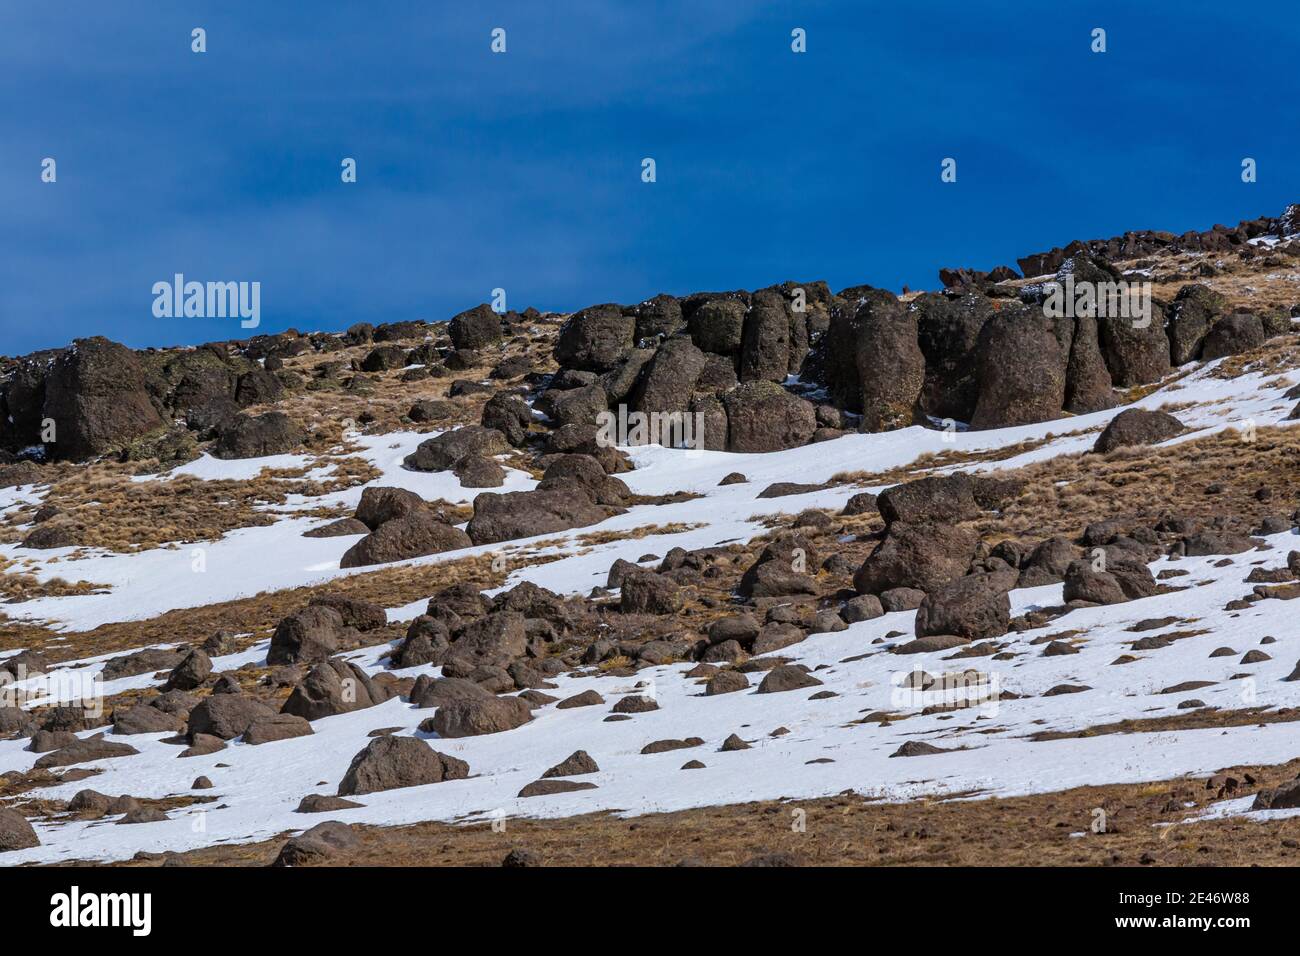 Affioramenti rocciosi e neve su Steens Mountain, Oregon, Stati Uniti Foto Stock